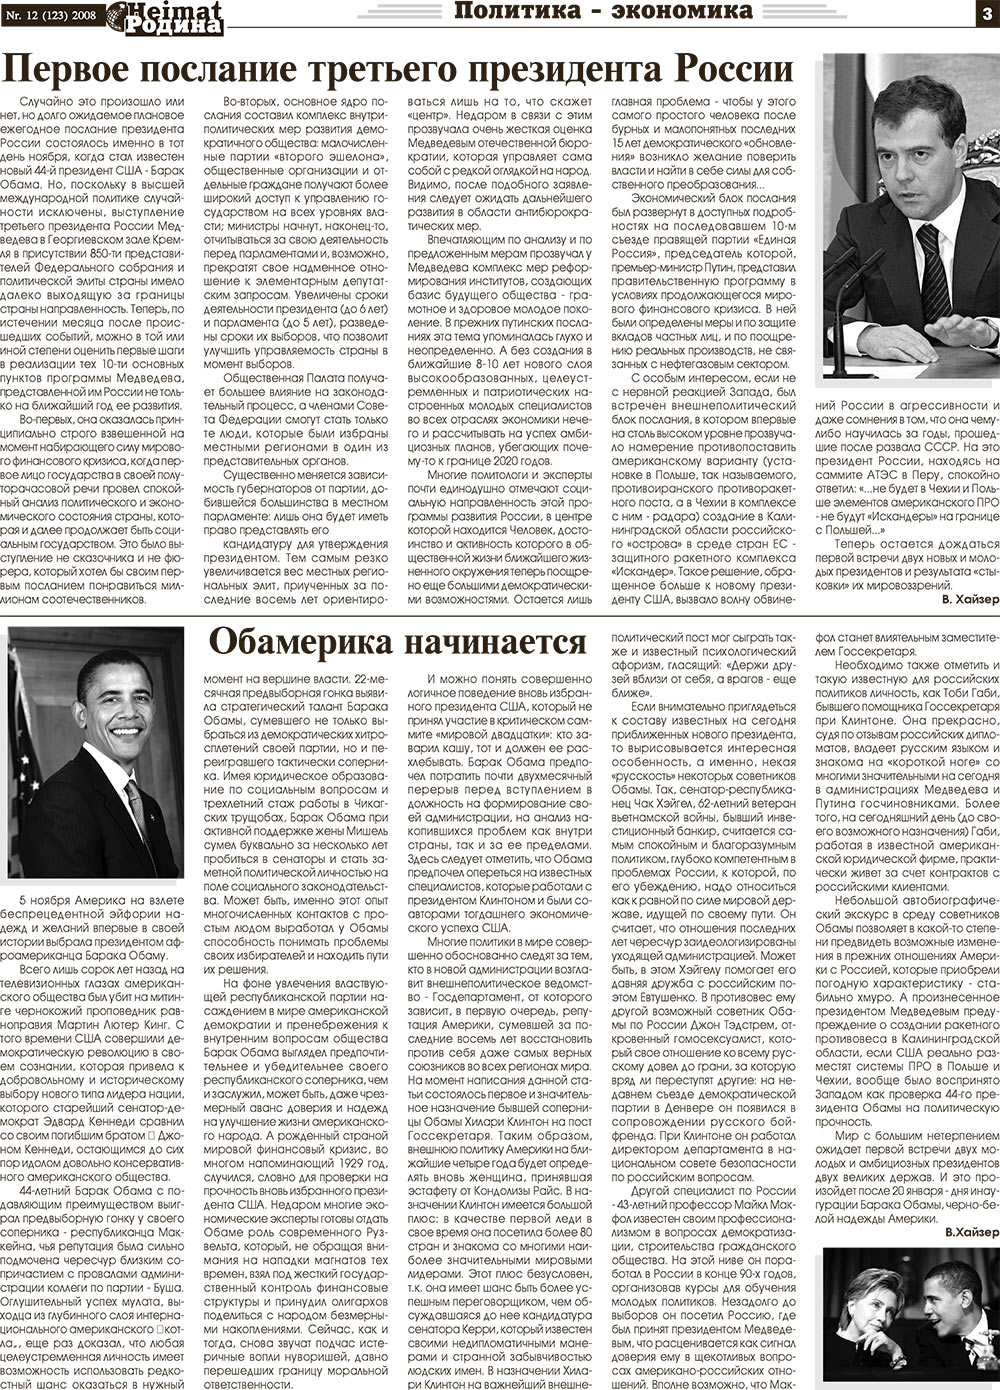 Heimat-Родина (газета). 2008 год, номер 12, стр. 3